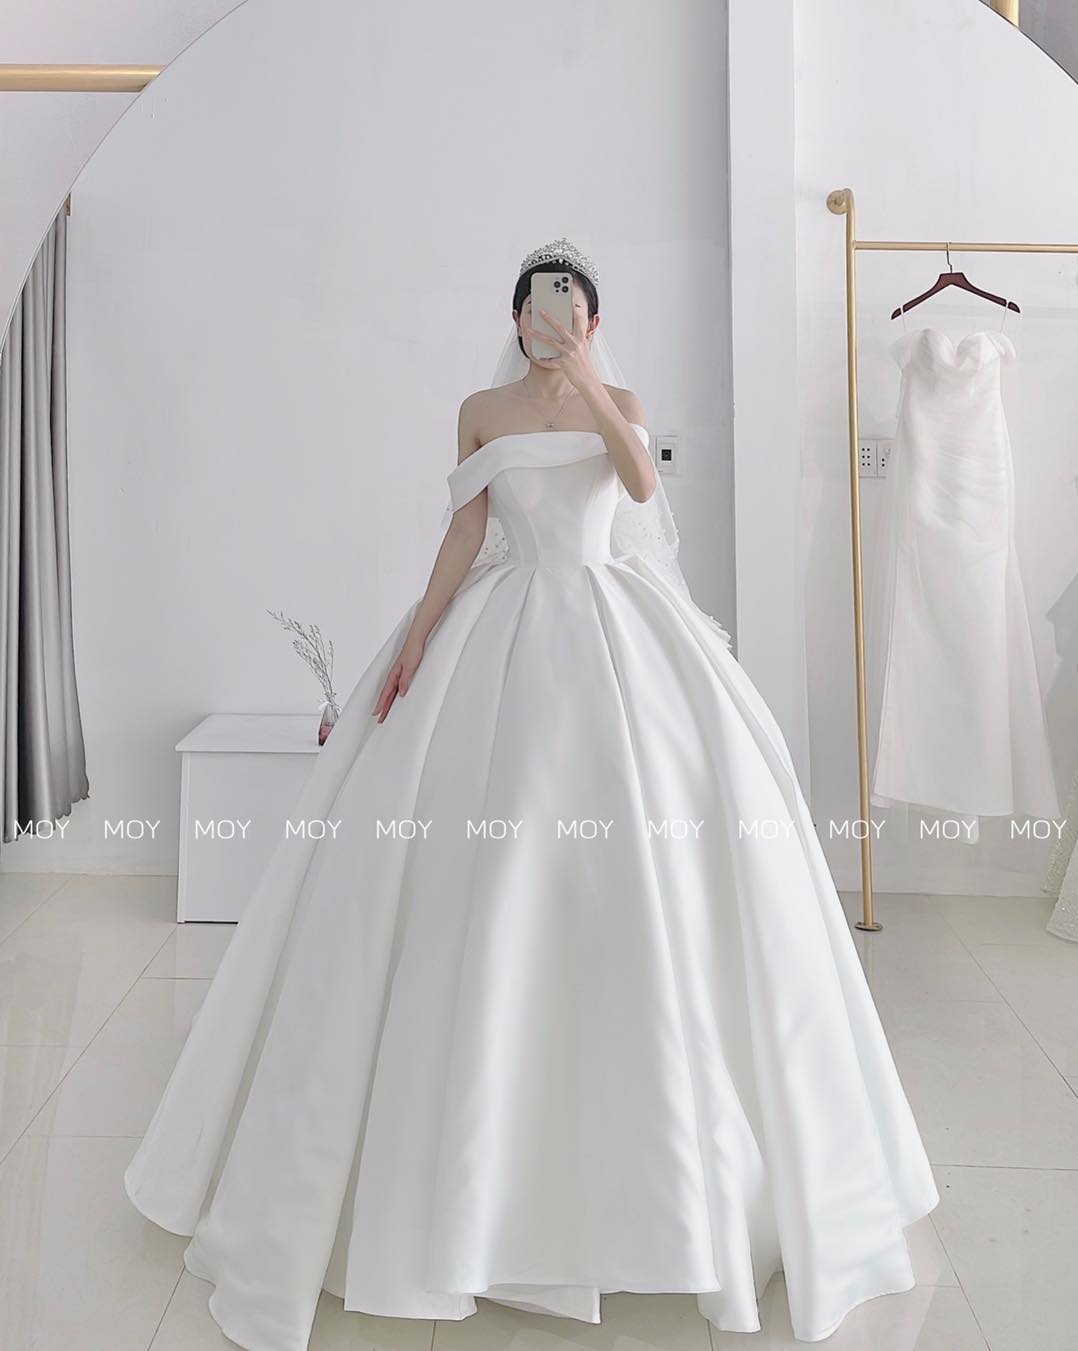 Bóc giá' hai chiếc váy cưới trong mơ của 'chị đẹp' Son Ye Jin